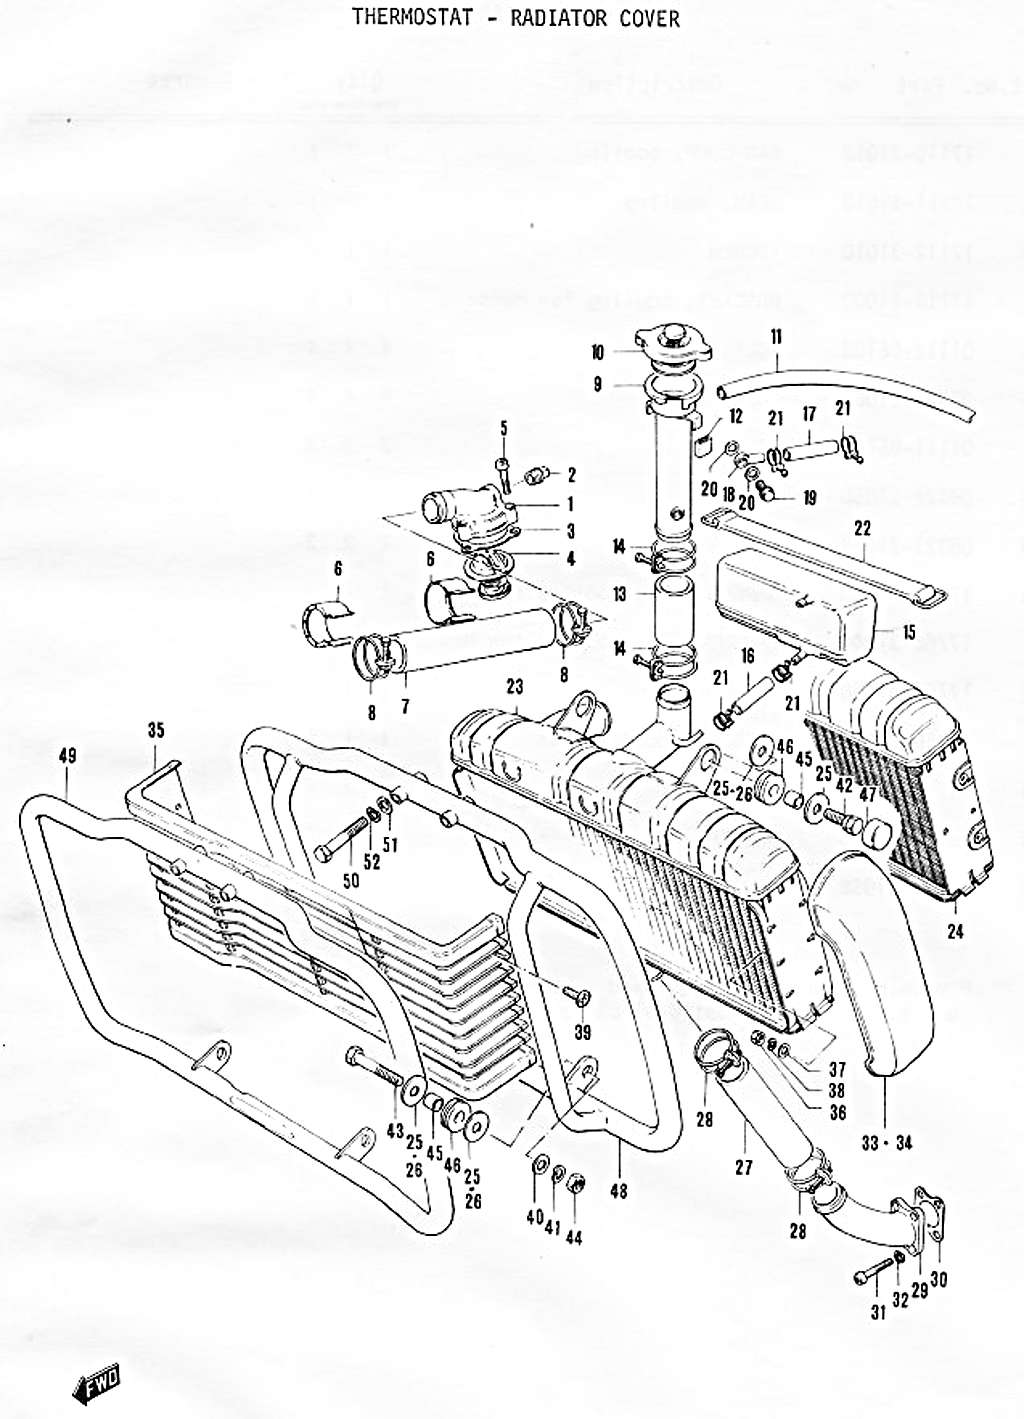 GT750 Parts Manual